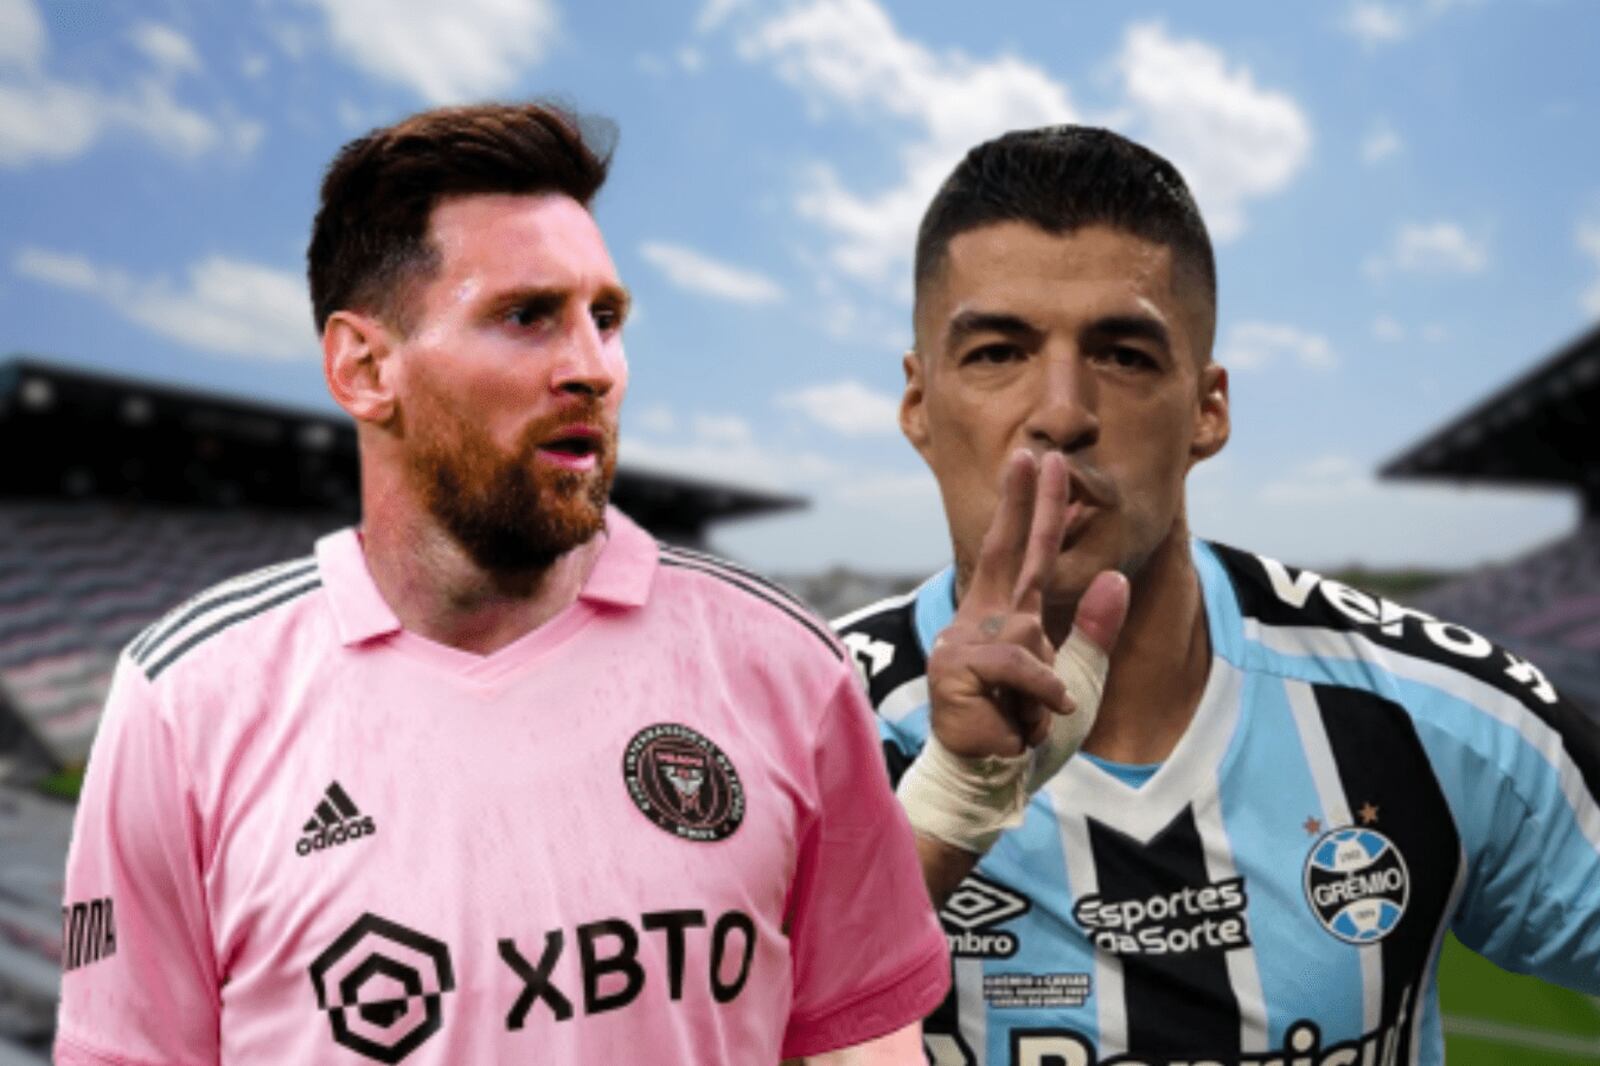 Todo listo, Luis Suarez y Messi juntos en la MLS, mira cuanto ganara el pistolero